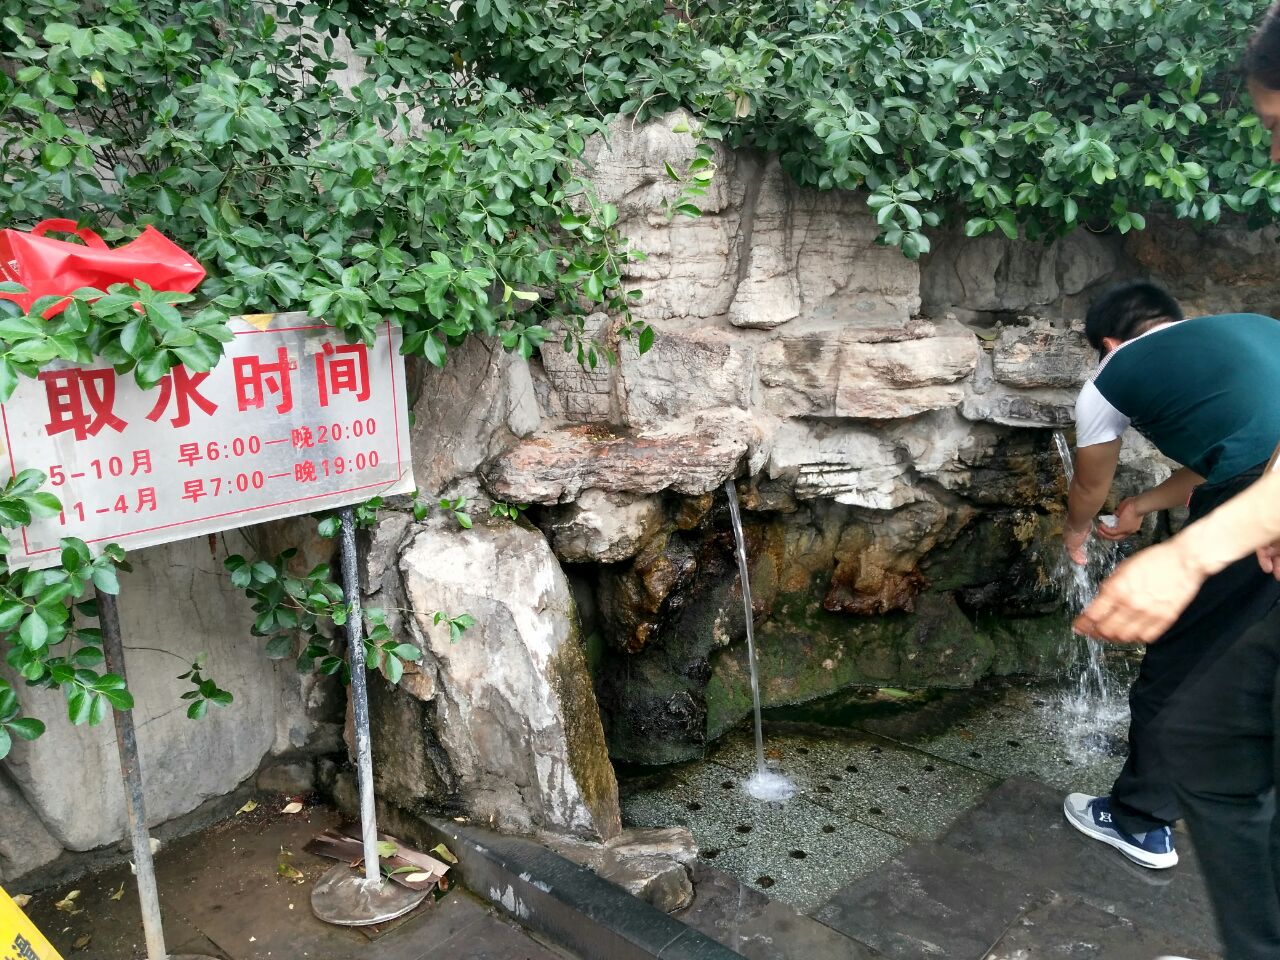 黑虎泉就在泉城中心,现在是免费开放的公园,很多市民每天都去取水